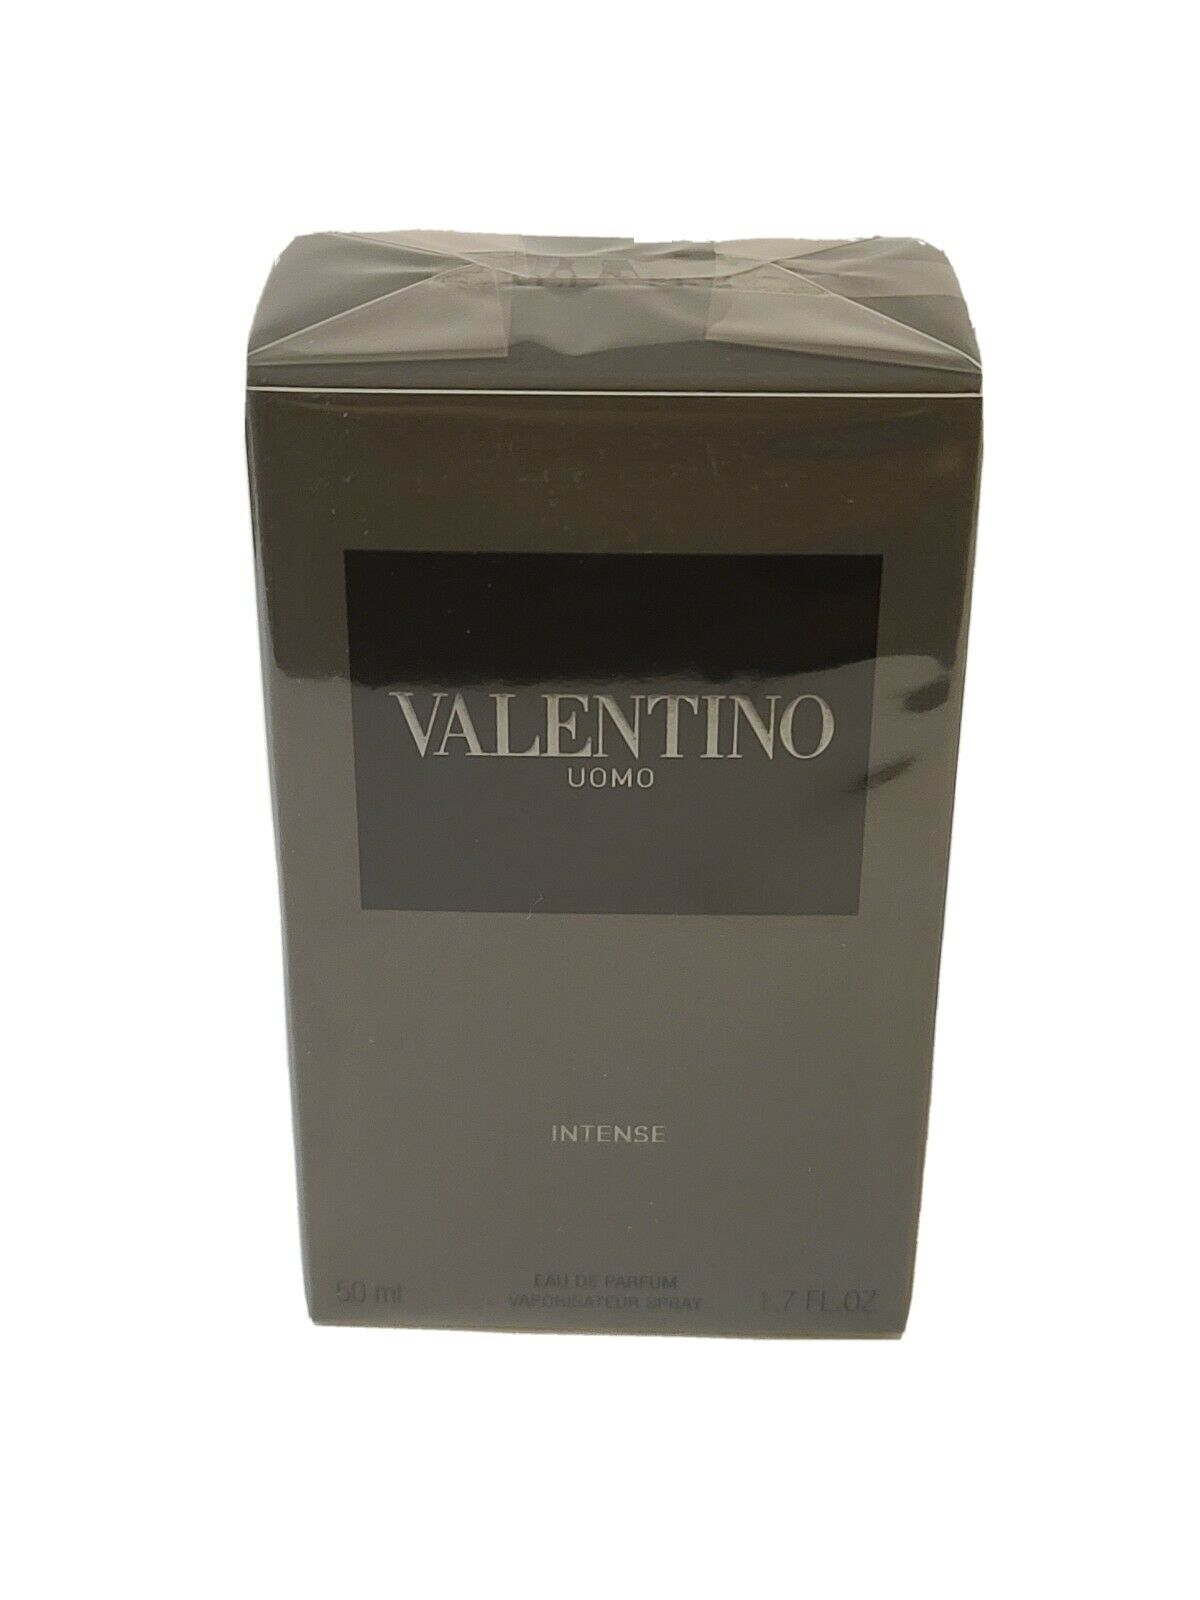 Valentino Uomo INTENSE 1.7 oz 50 ml EDT Eau de Parfum Spray Men RARE S ...